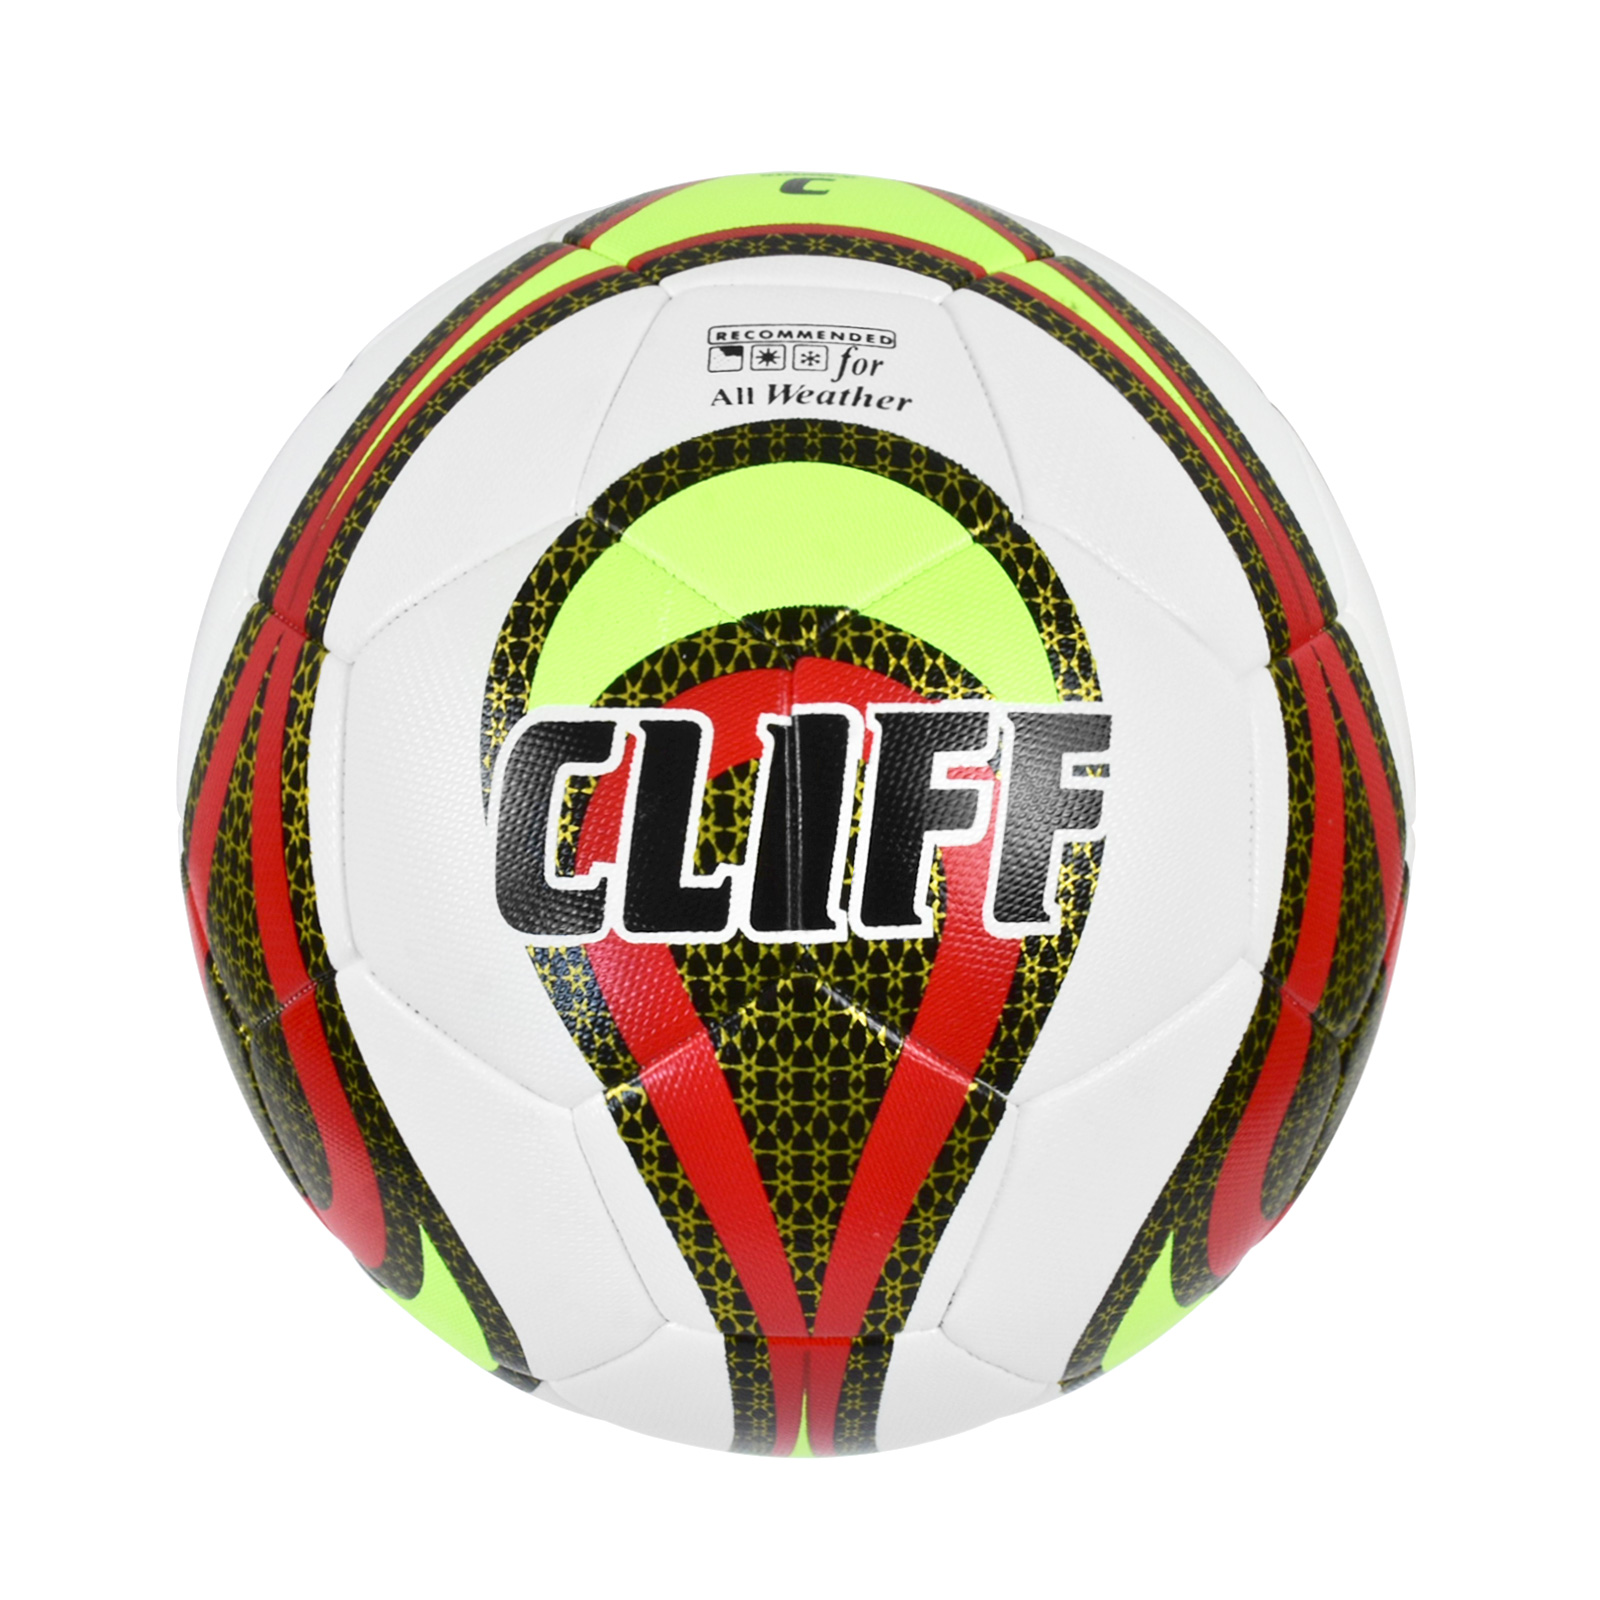 Мяч футбольный CLIFF 3610, 5 размер, PU Hibrid, бело-красно-зеленый